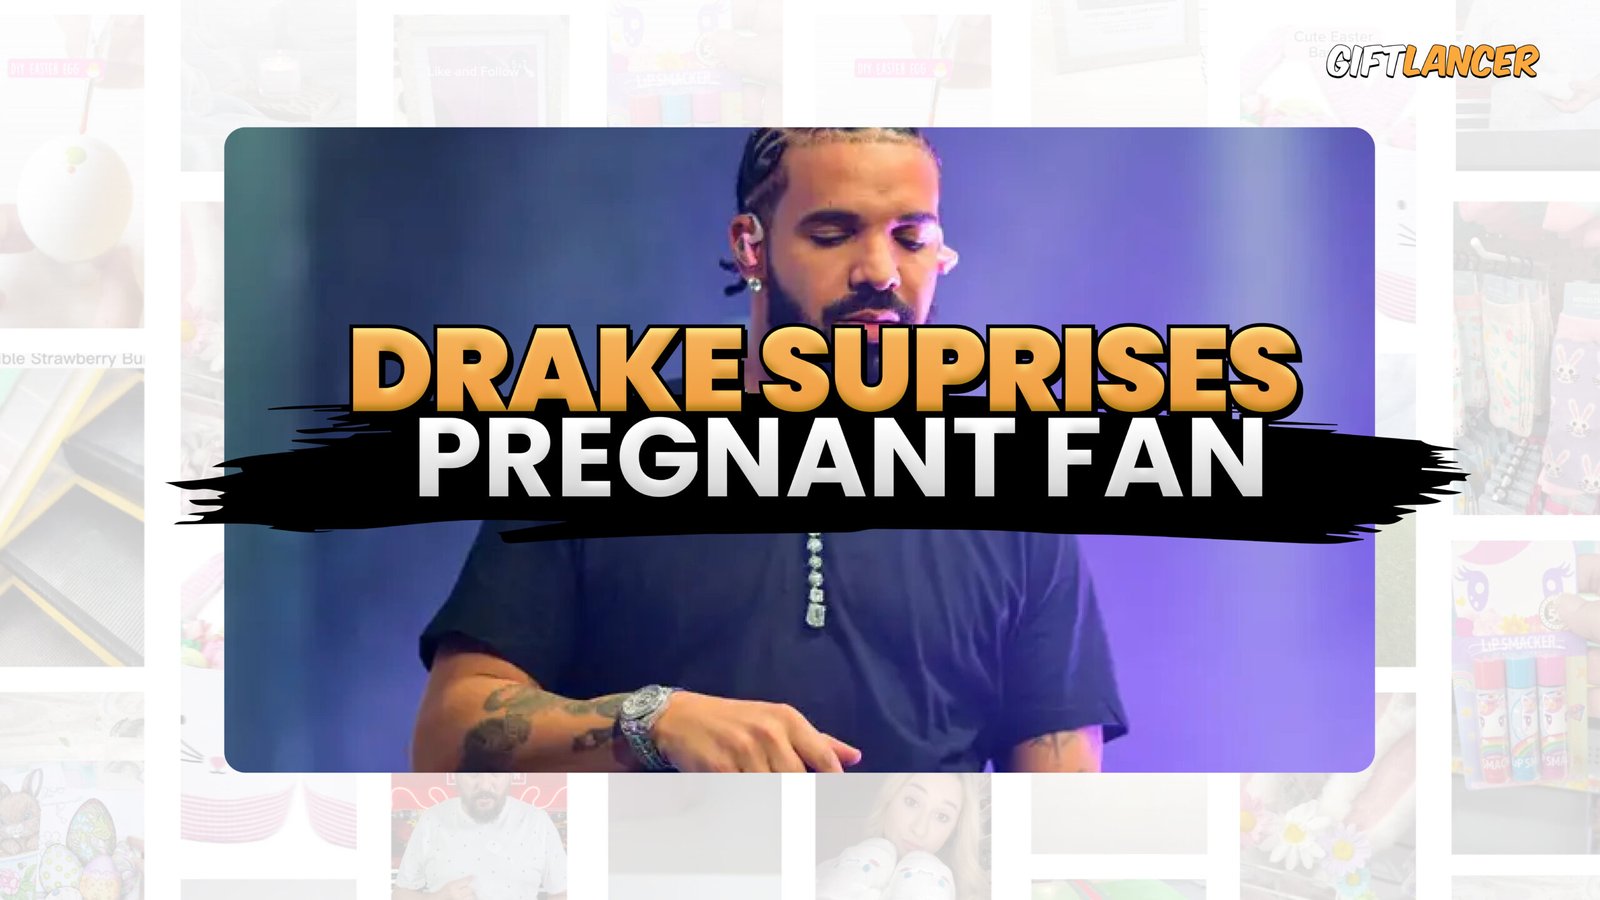 Drake suprises pregnant fan